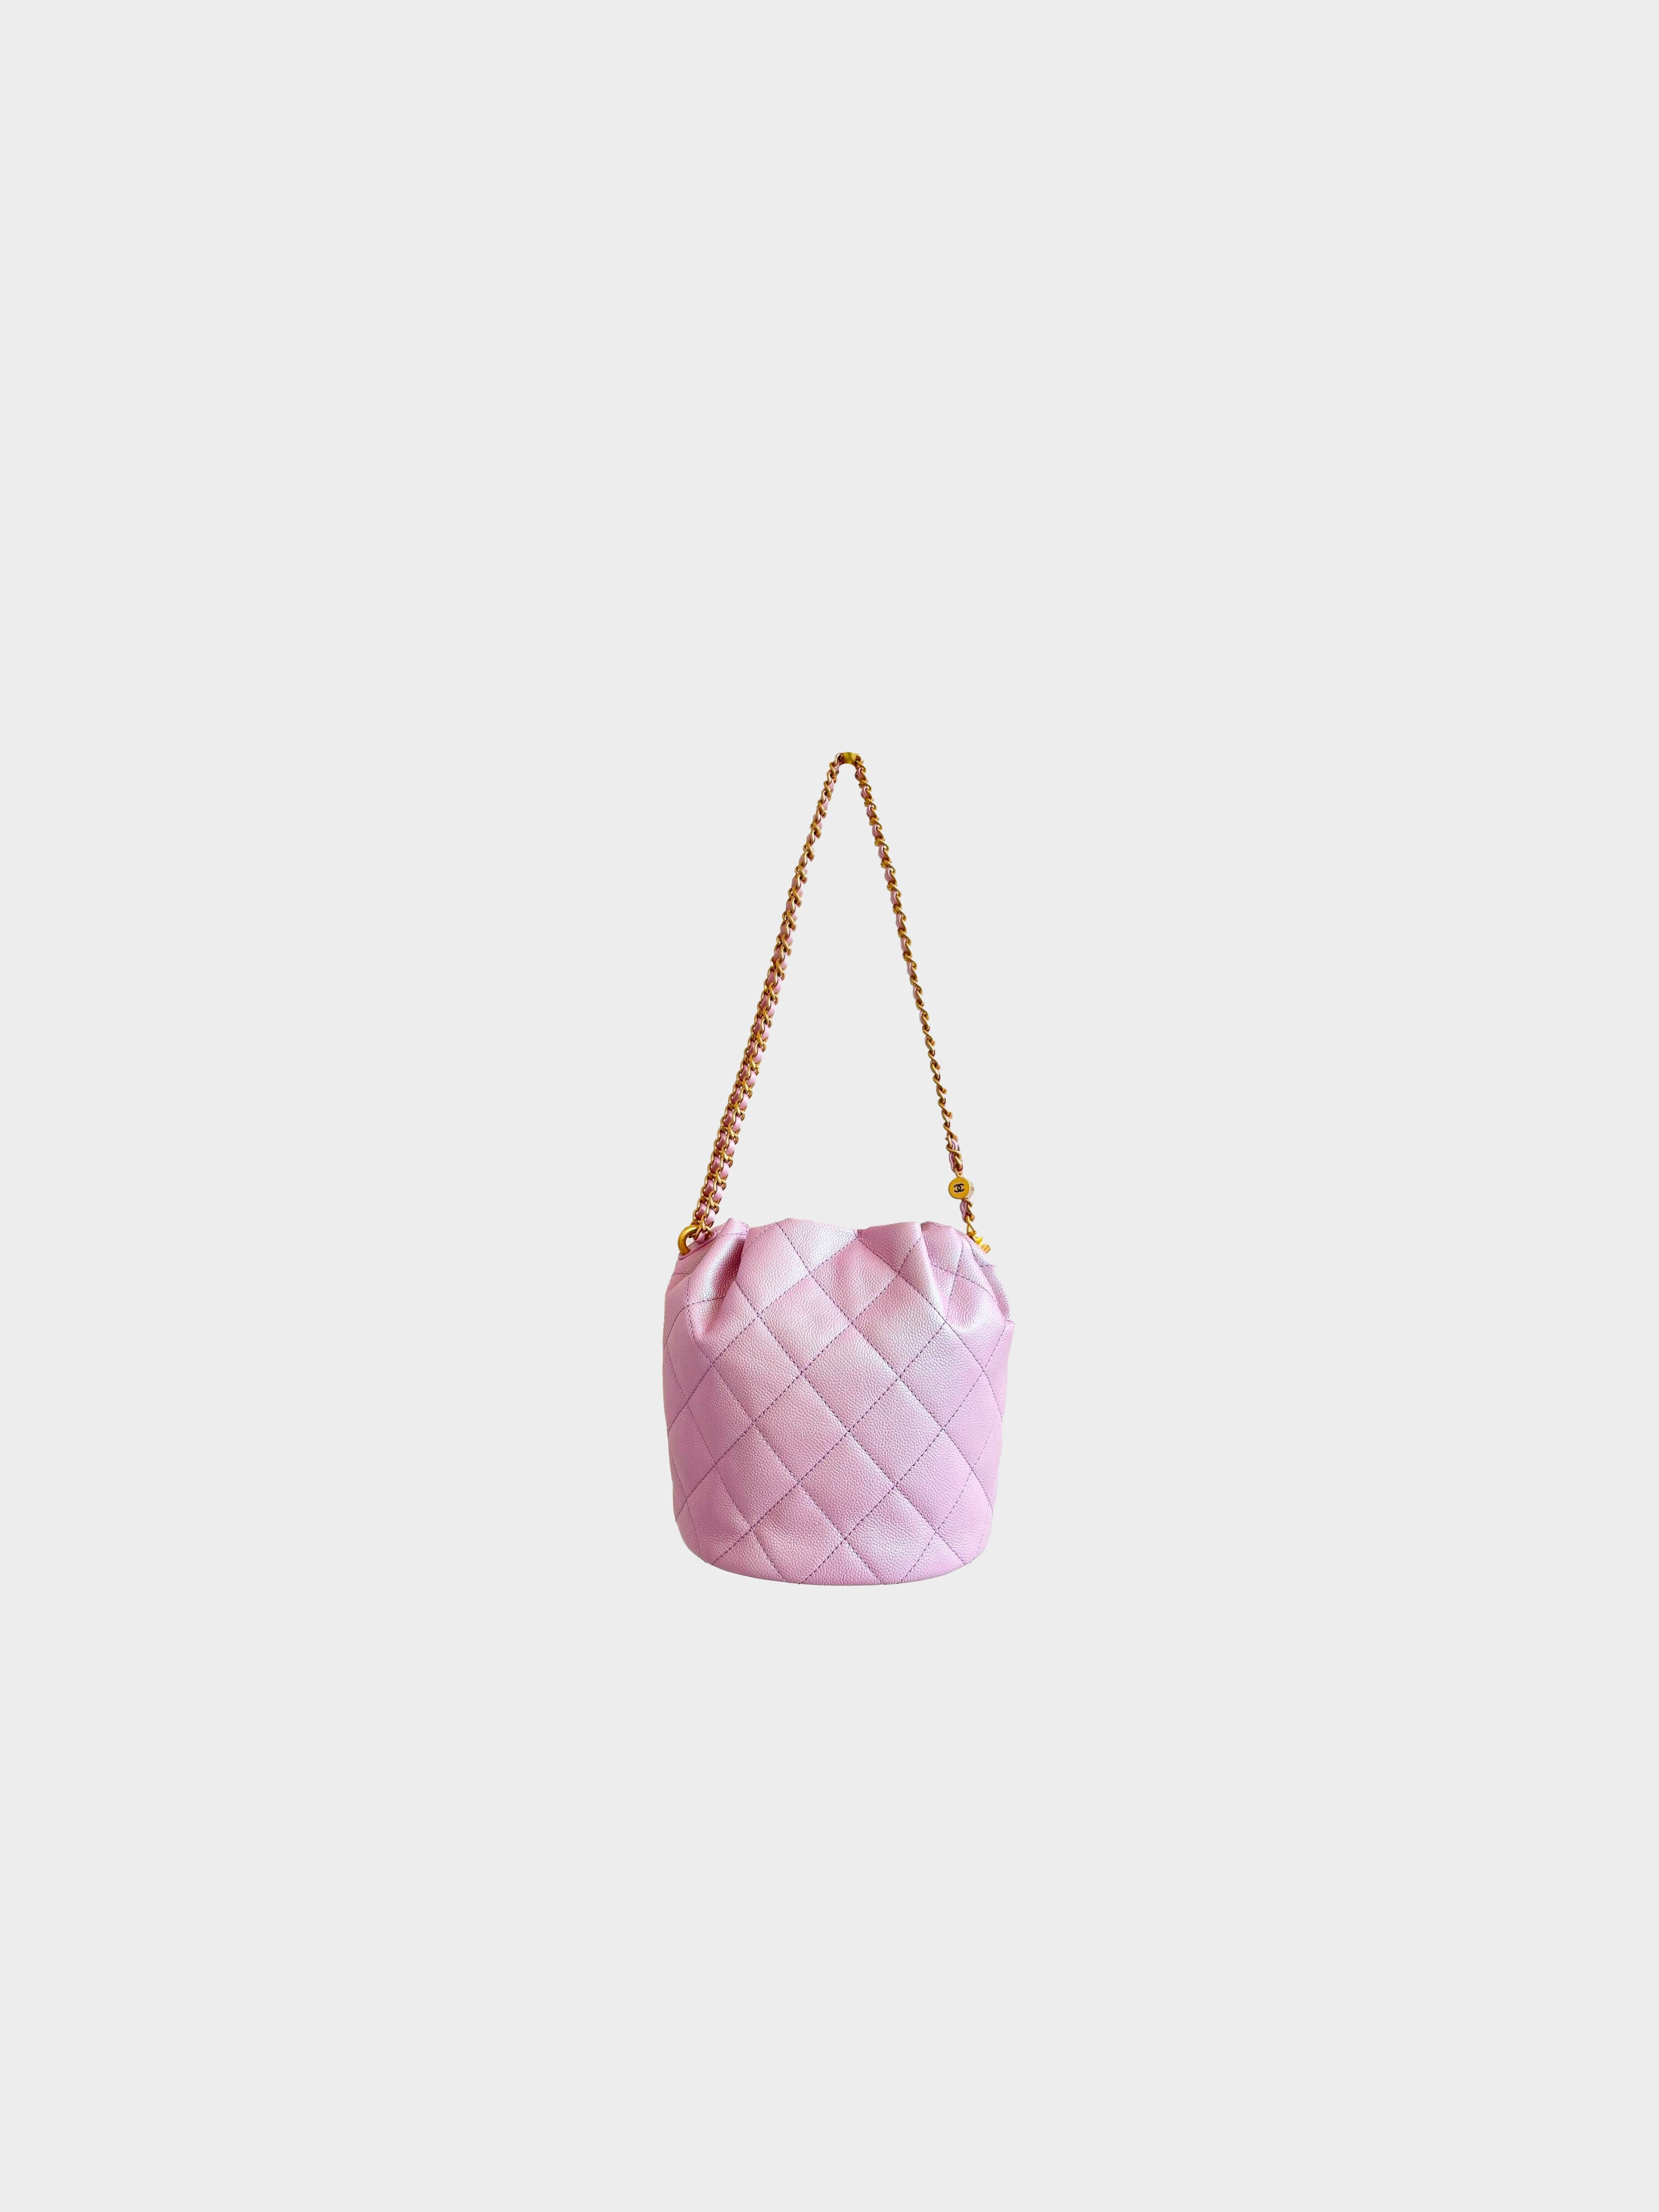 CHANEL CC Fringe Chain Shoulder Bag Satin Canvas Pink Italy Vintage 696JG858